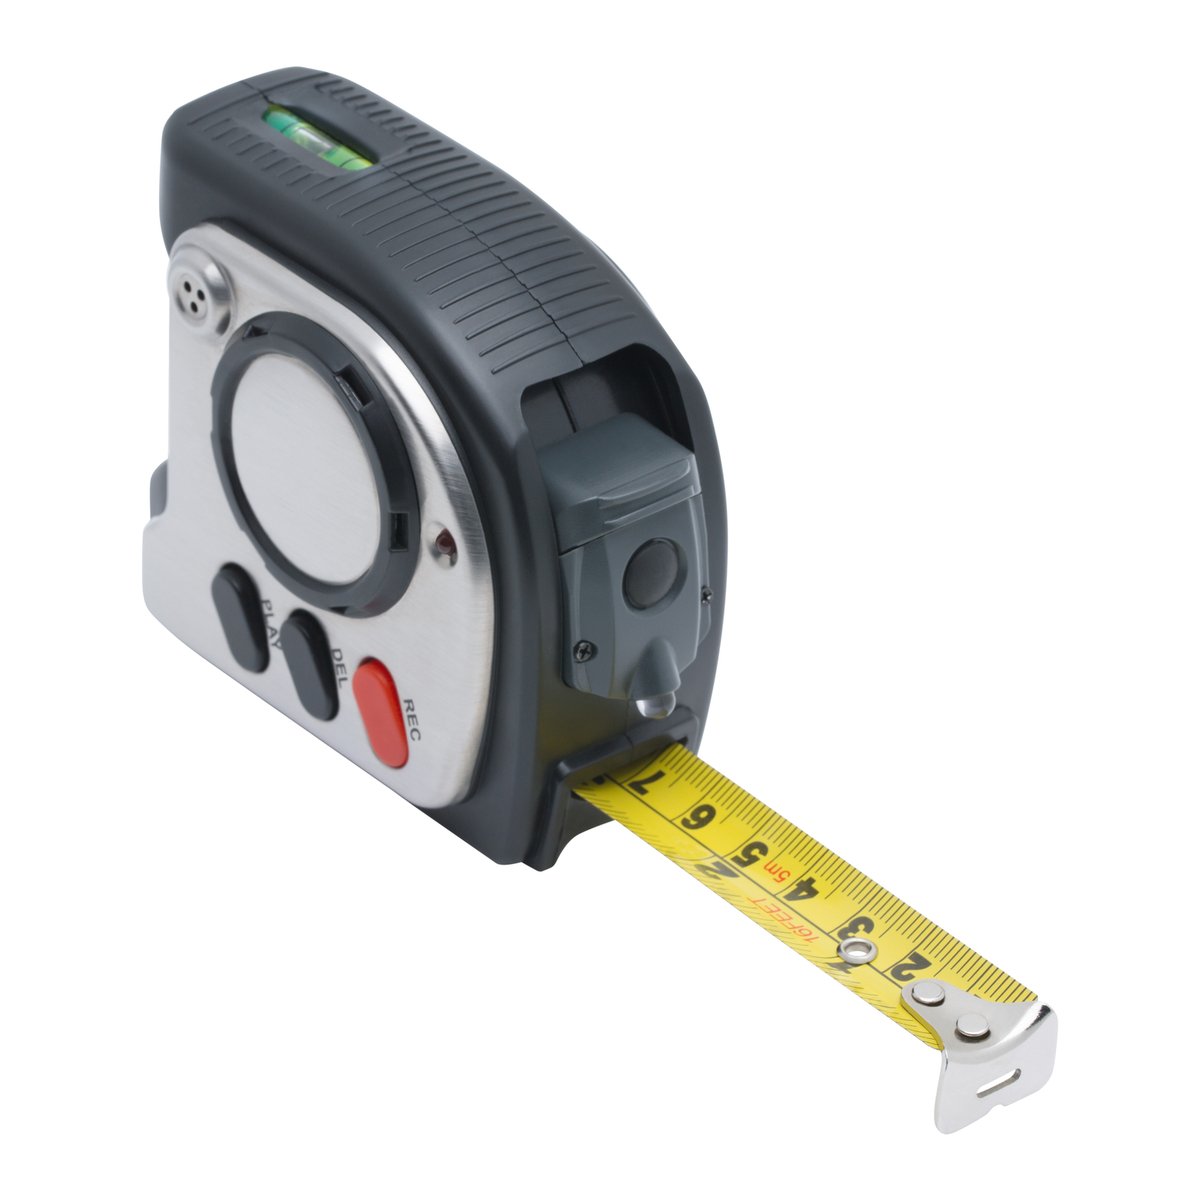 Multifunction measure tape REFLECTS-LANSING